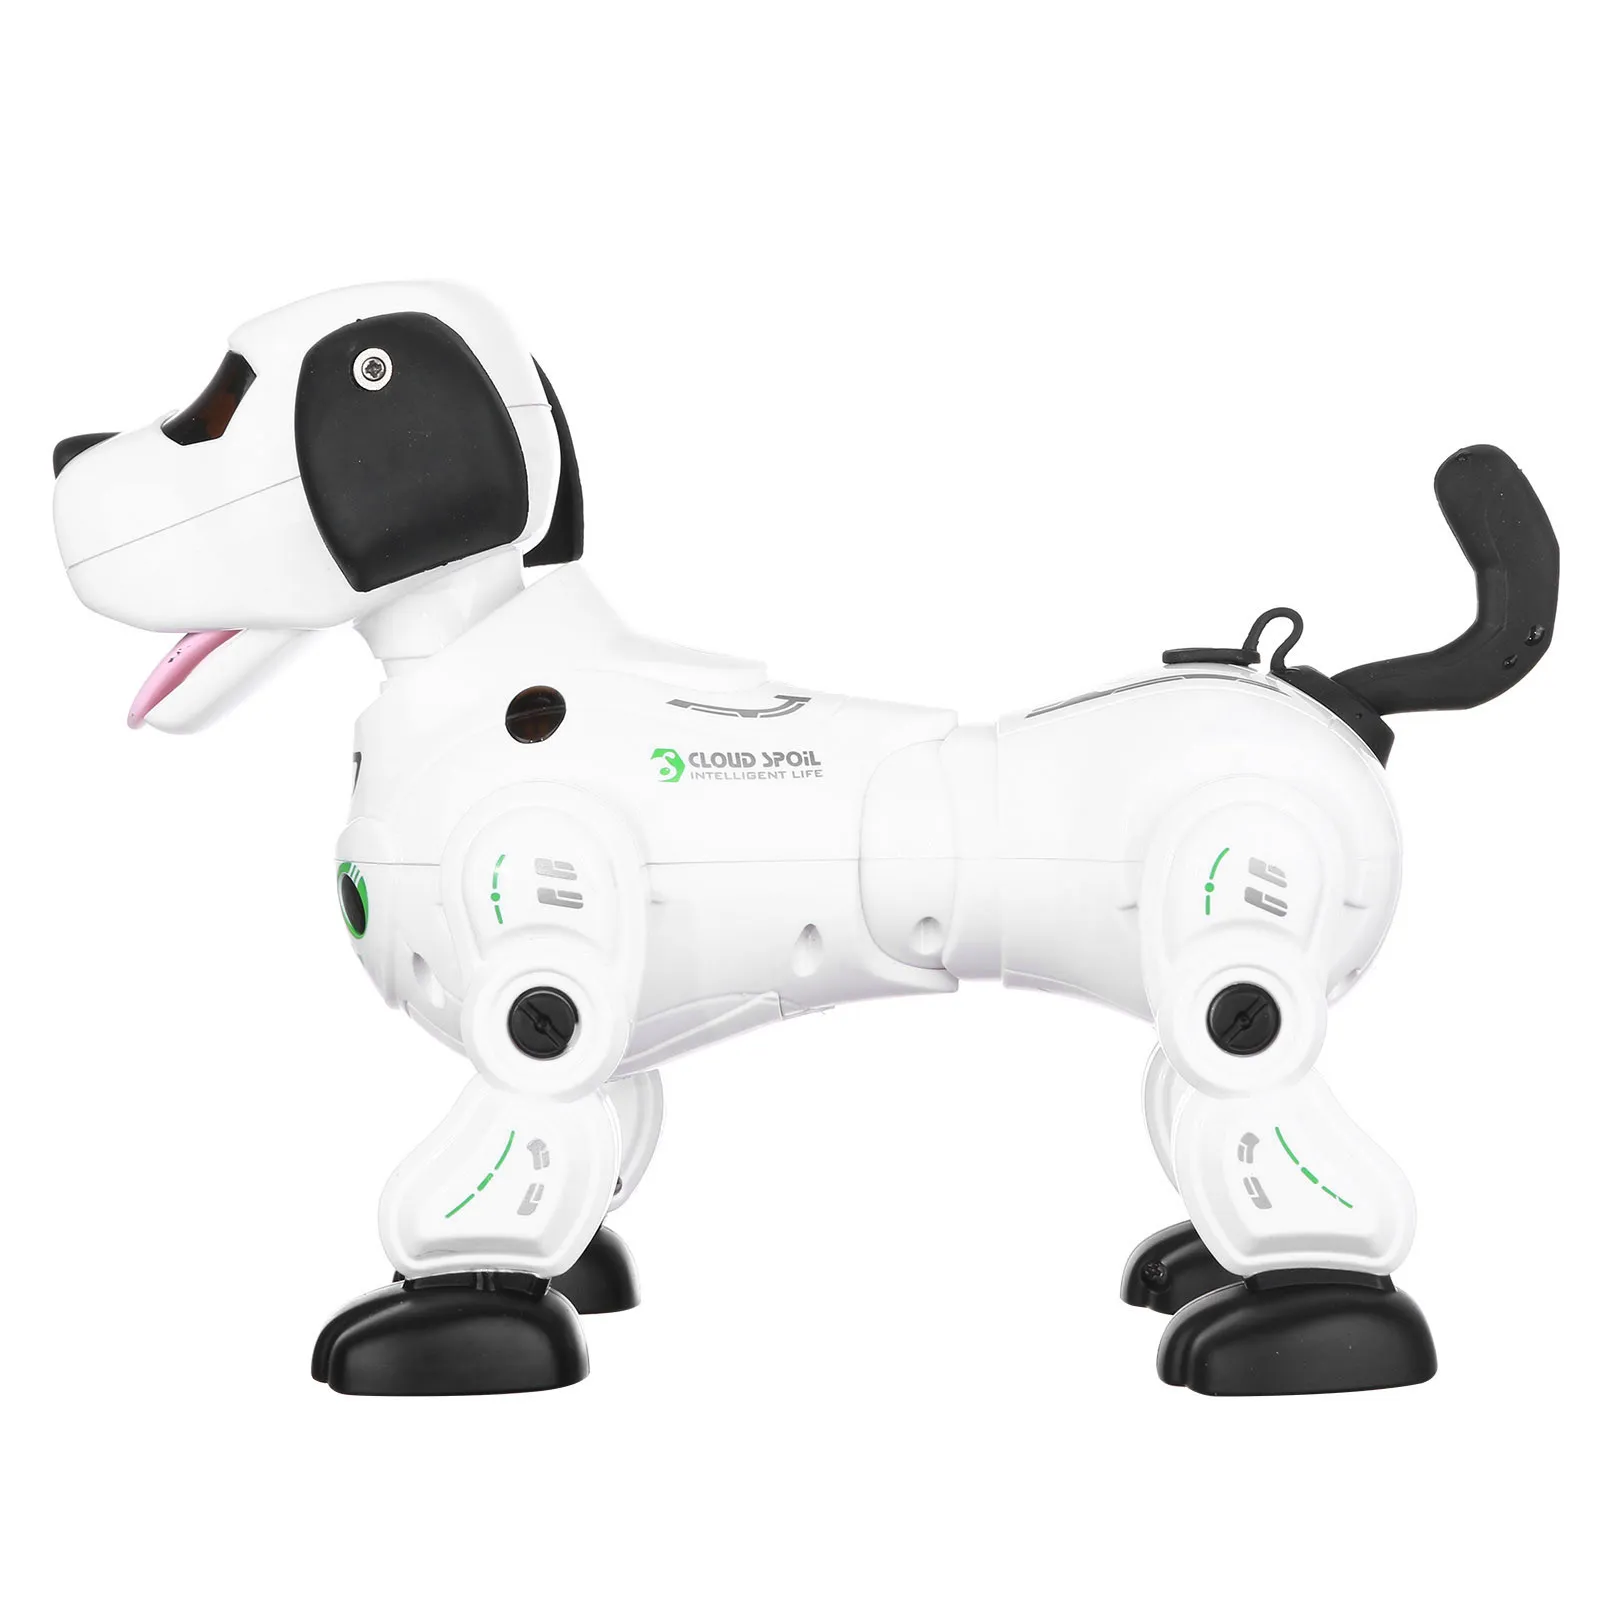 Sensore tattile di alta qualità Puppy 2.4G Robot Telecomando Giocattolo di intrattenimento robot intelligente bambini Accompagna i regali dei tuoi bambini